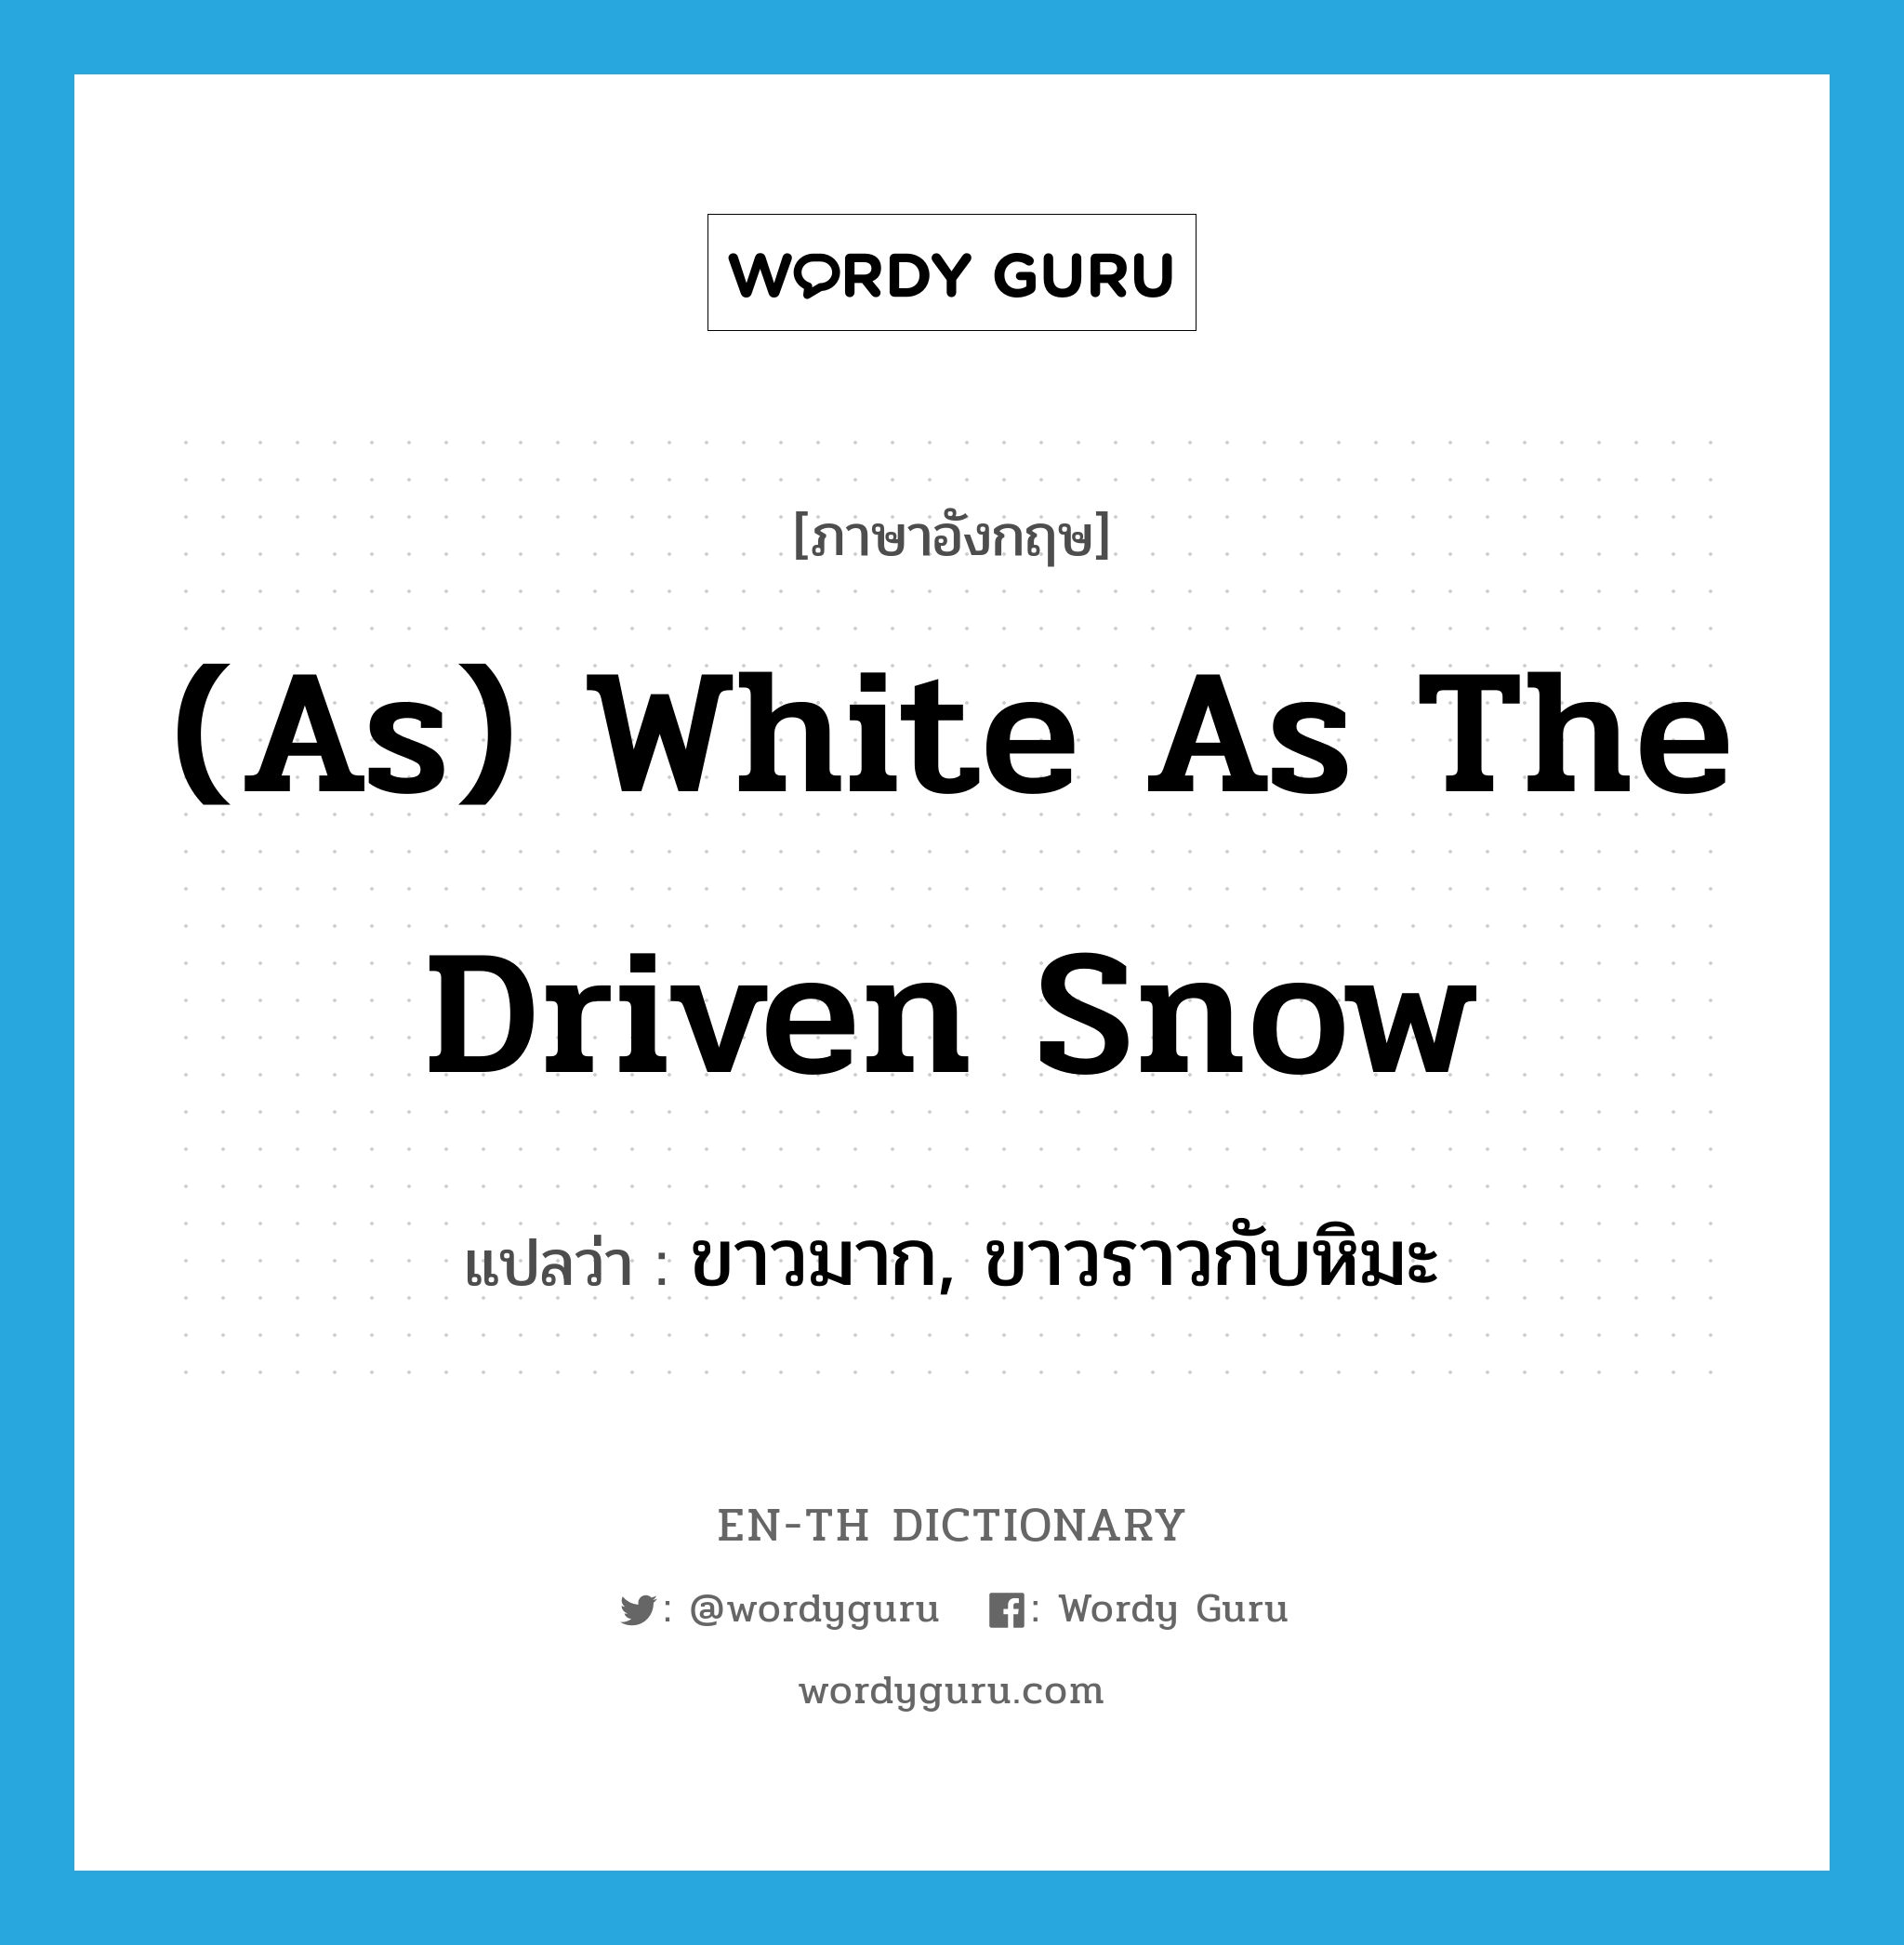 ขาวมาก, ขาวราวกับหิมะ ภาษาอังกฤษ?, คำศัพท์ภาษาอังกฤษ ขาวมาก, ขาวราวกับหิมะ แปลว่า (as) white as the driven snow ประเภท IDM หมวด IDM